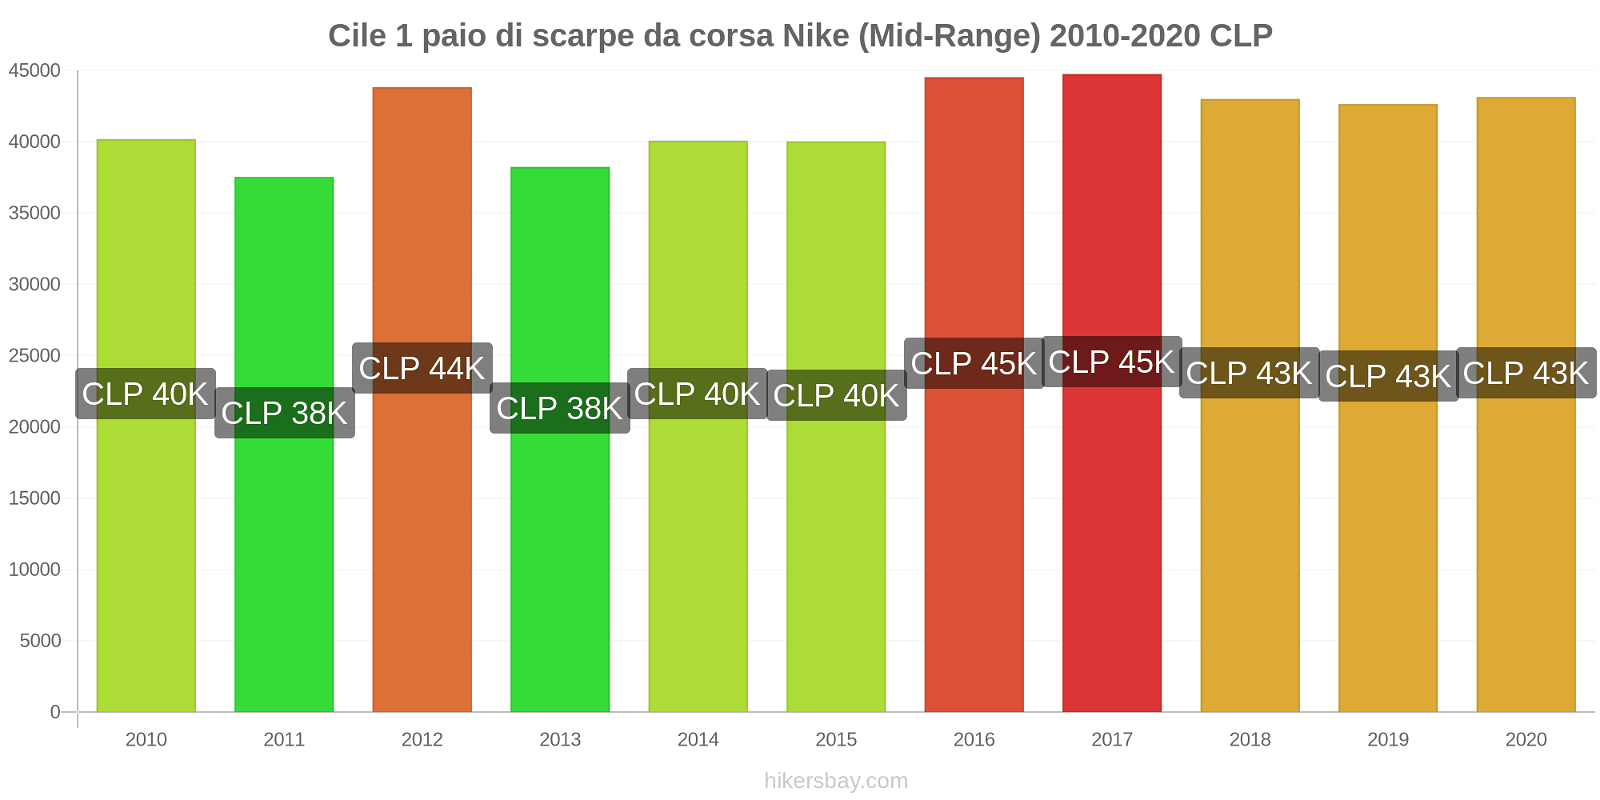 Cile variazioni di prezzo 1 paio di scarpe da corsa Nike (simile) hikersbay.com